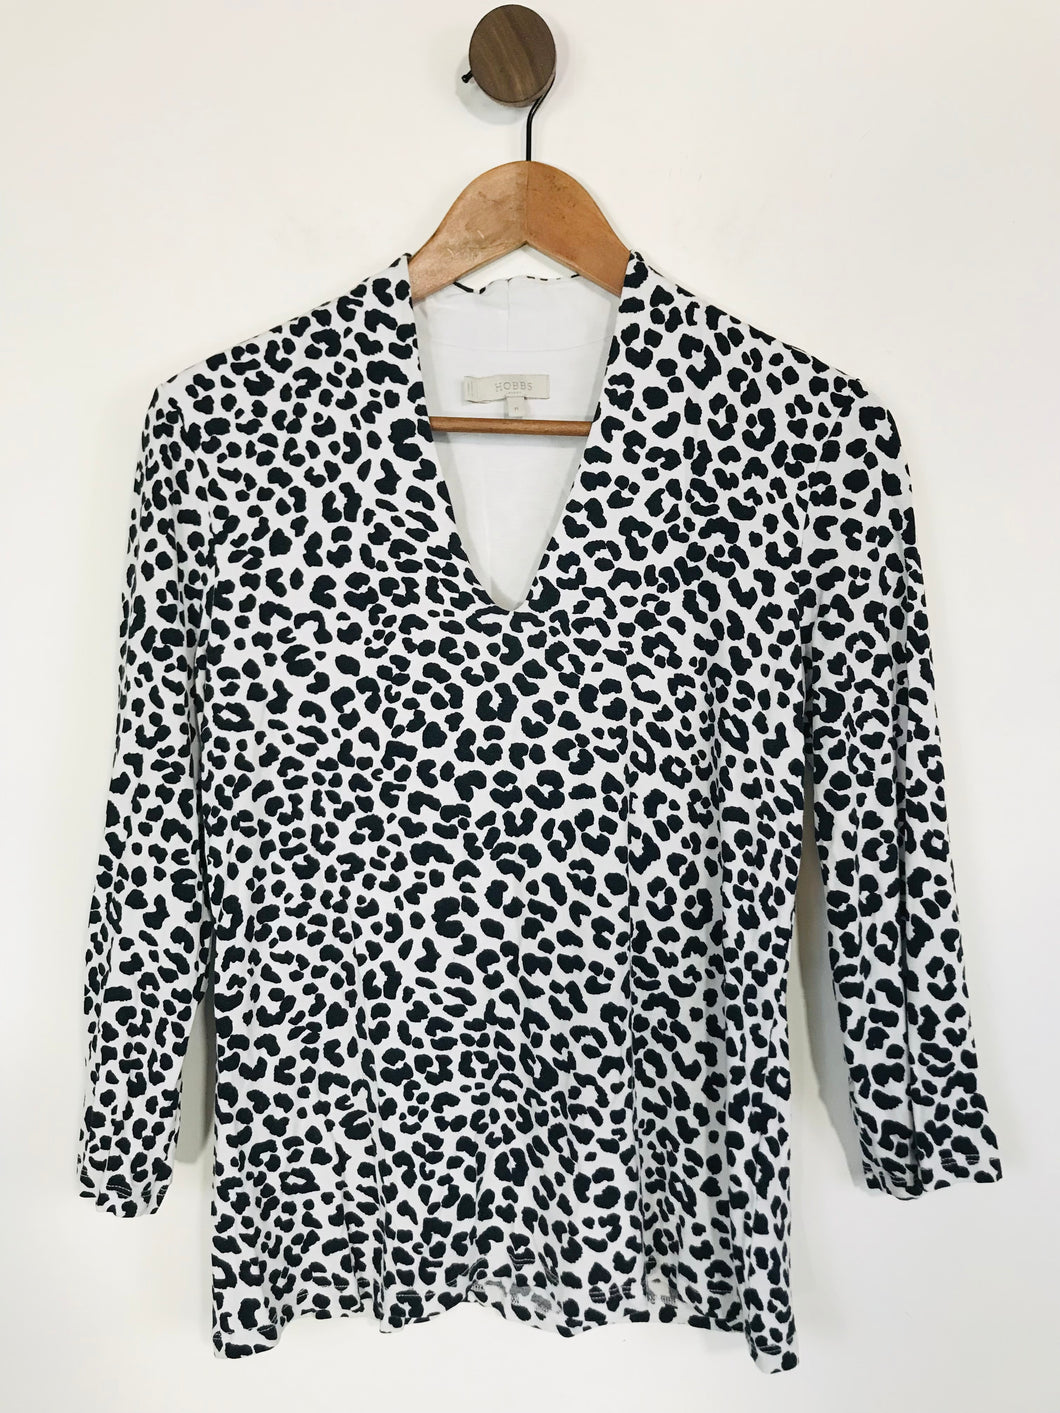 Hobbs Women's Leopard Print Jersey T-Shirt  | M UK10-12 | Black